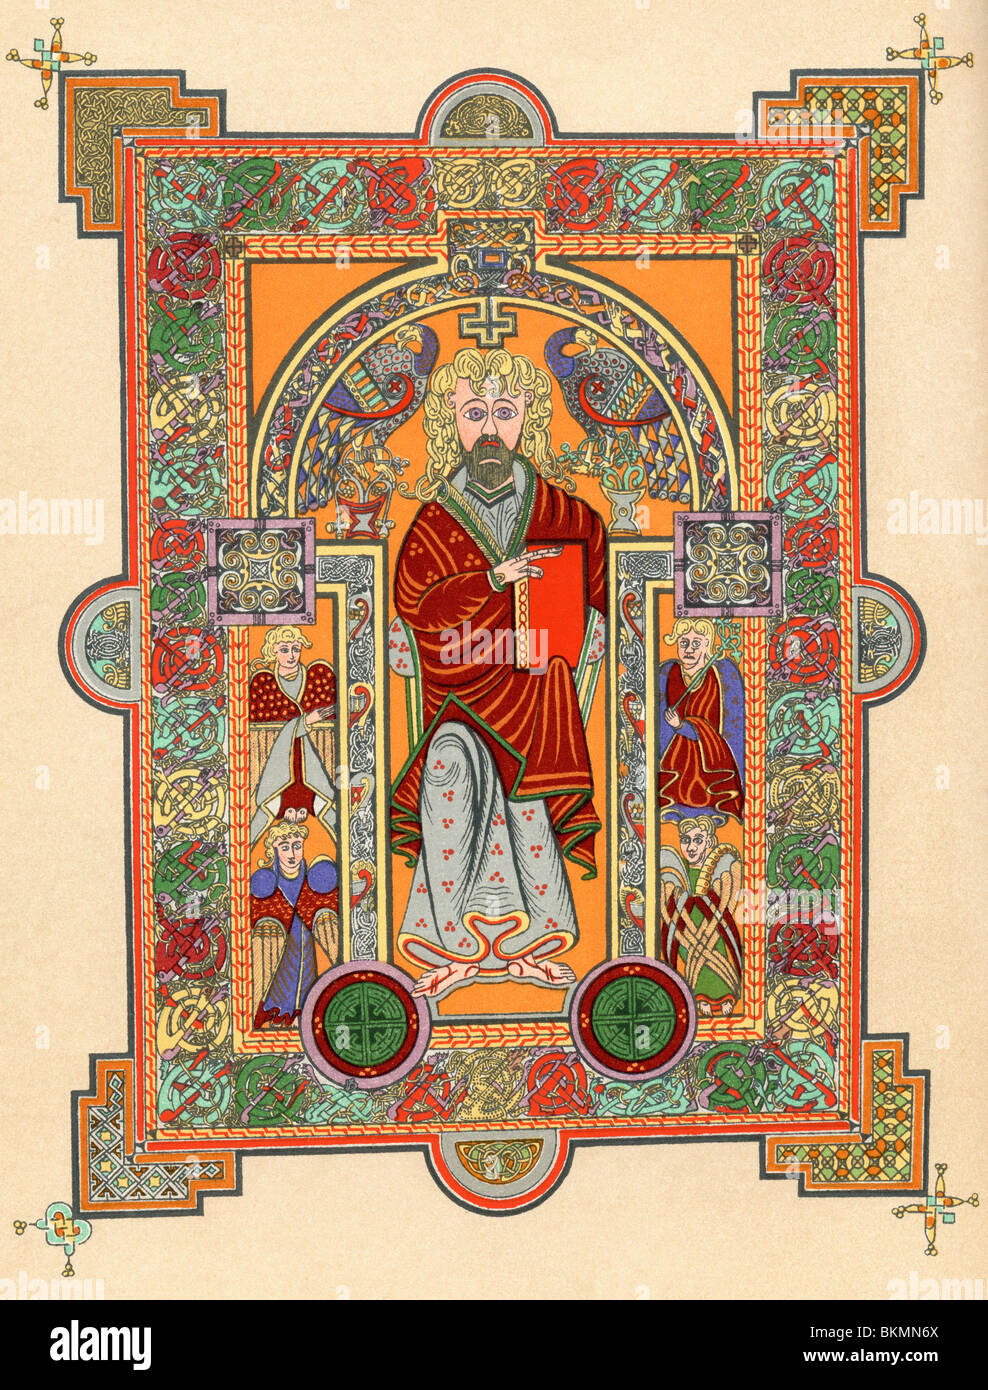 Cristo con cuatro ángeles, página de introducción al evangelio de san Mateo, desde el Libro de Kells, c.800. Foto de stock